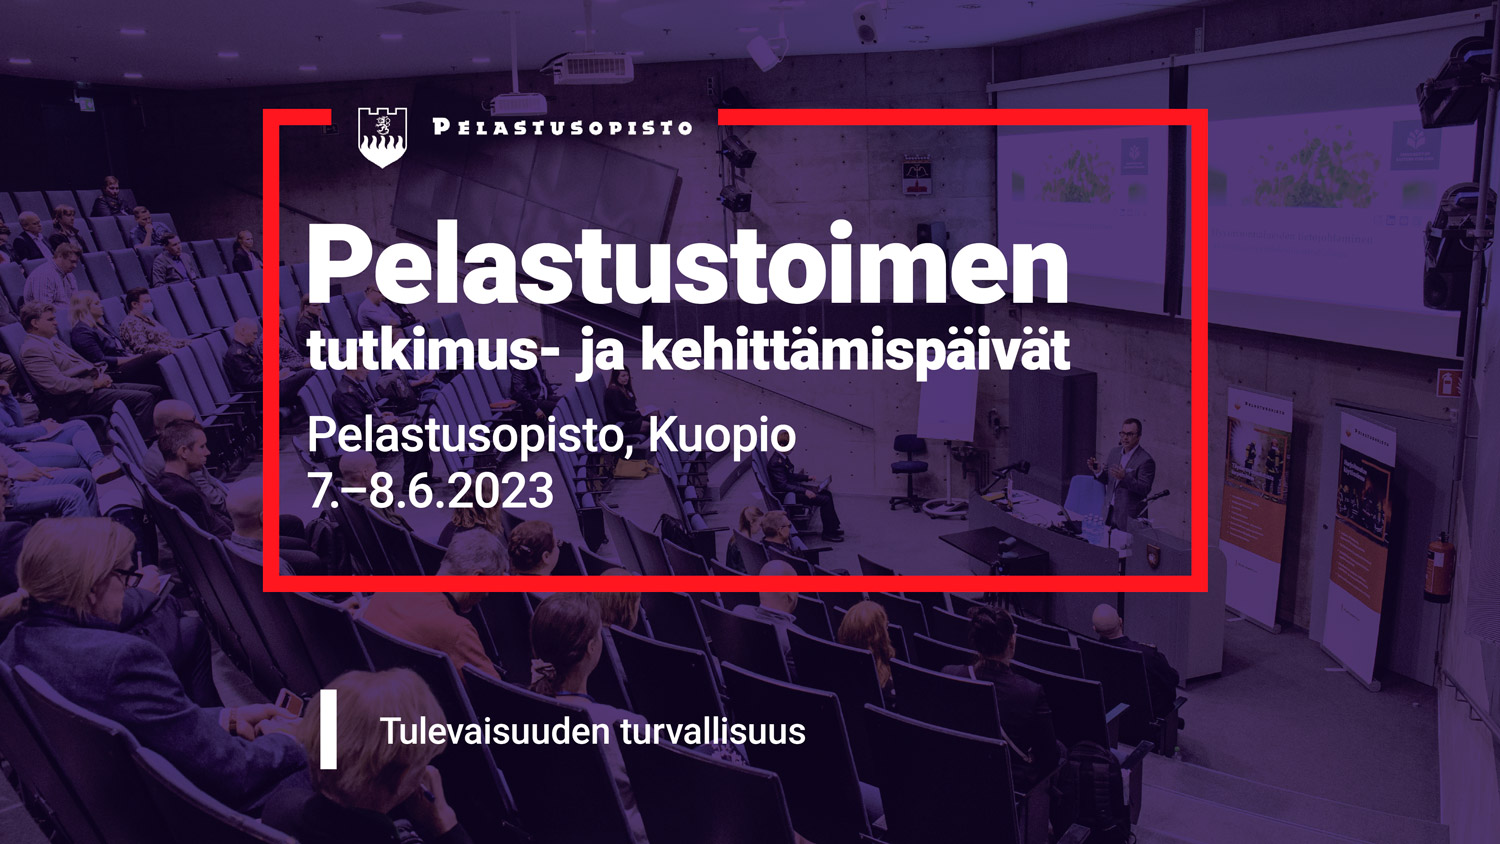 Pelastustoimen tutkimus- ja kehittämispäivät Pelastusopisto, Kuopio. 7.-8.6.2023. Tulevaisuuden turvallisuus.